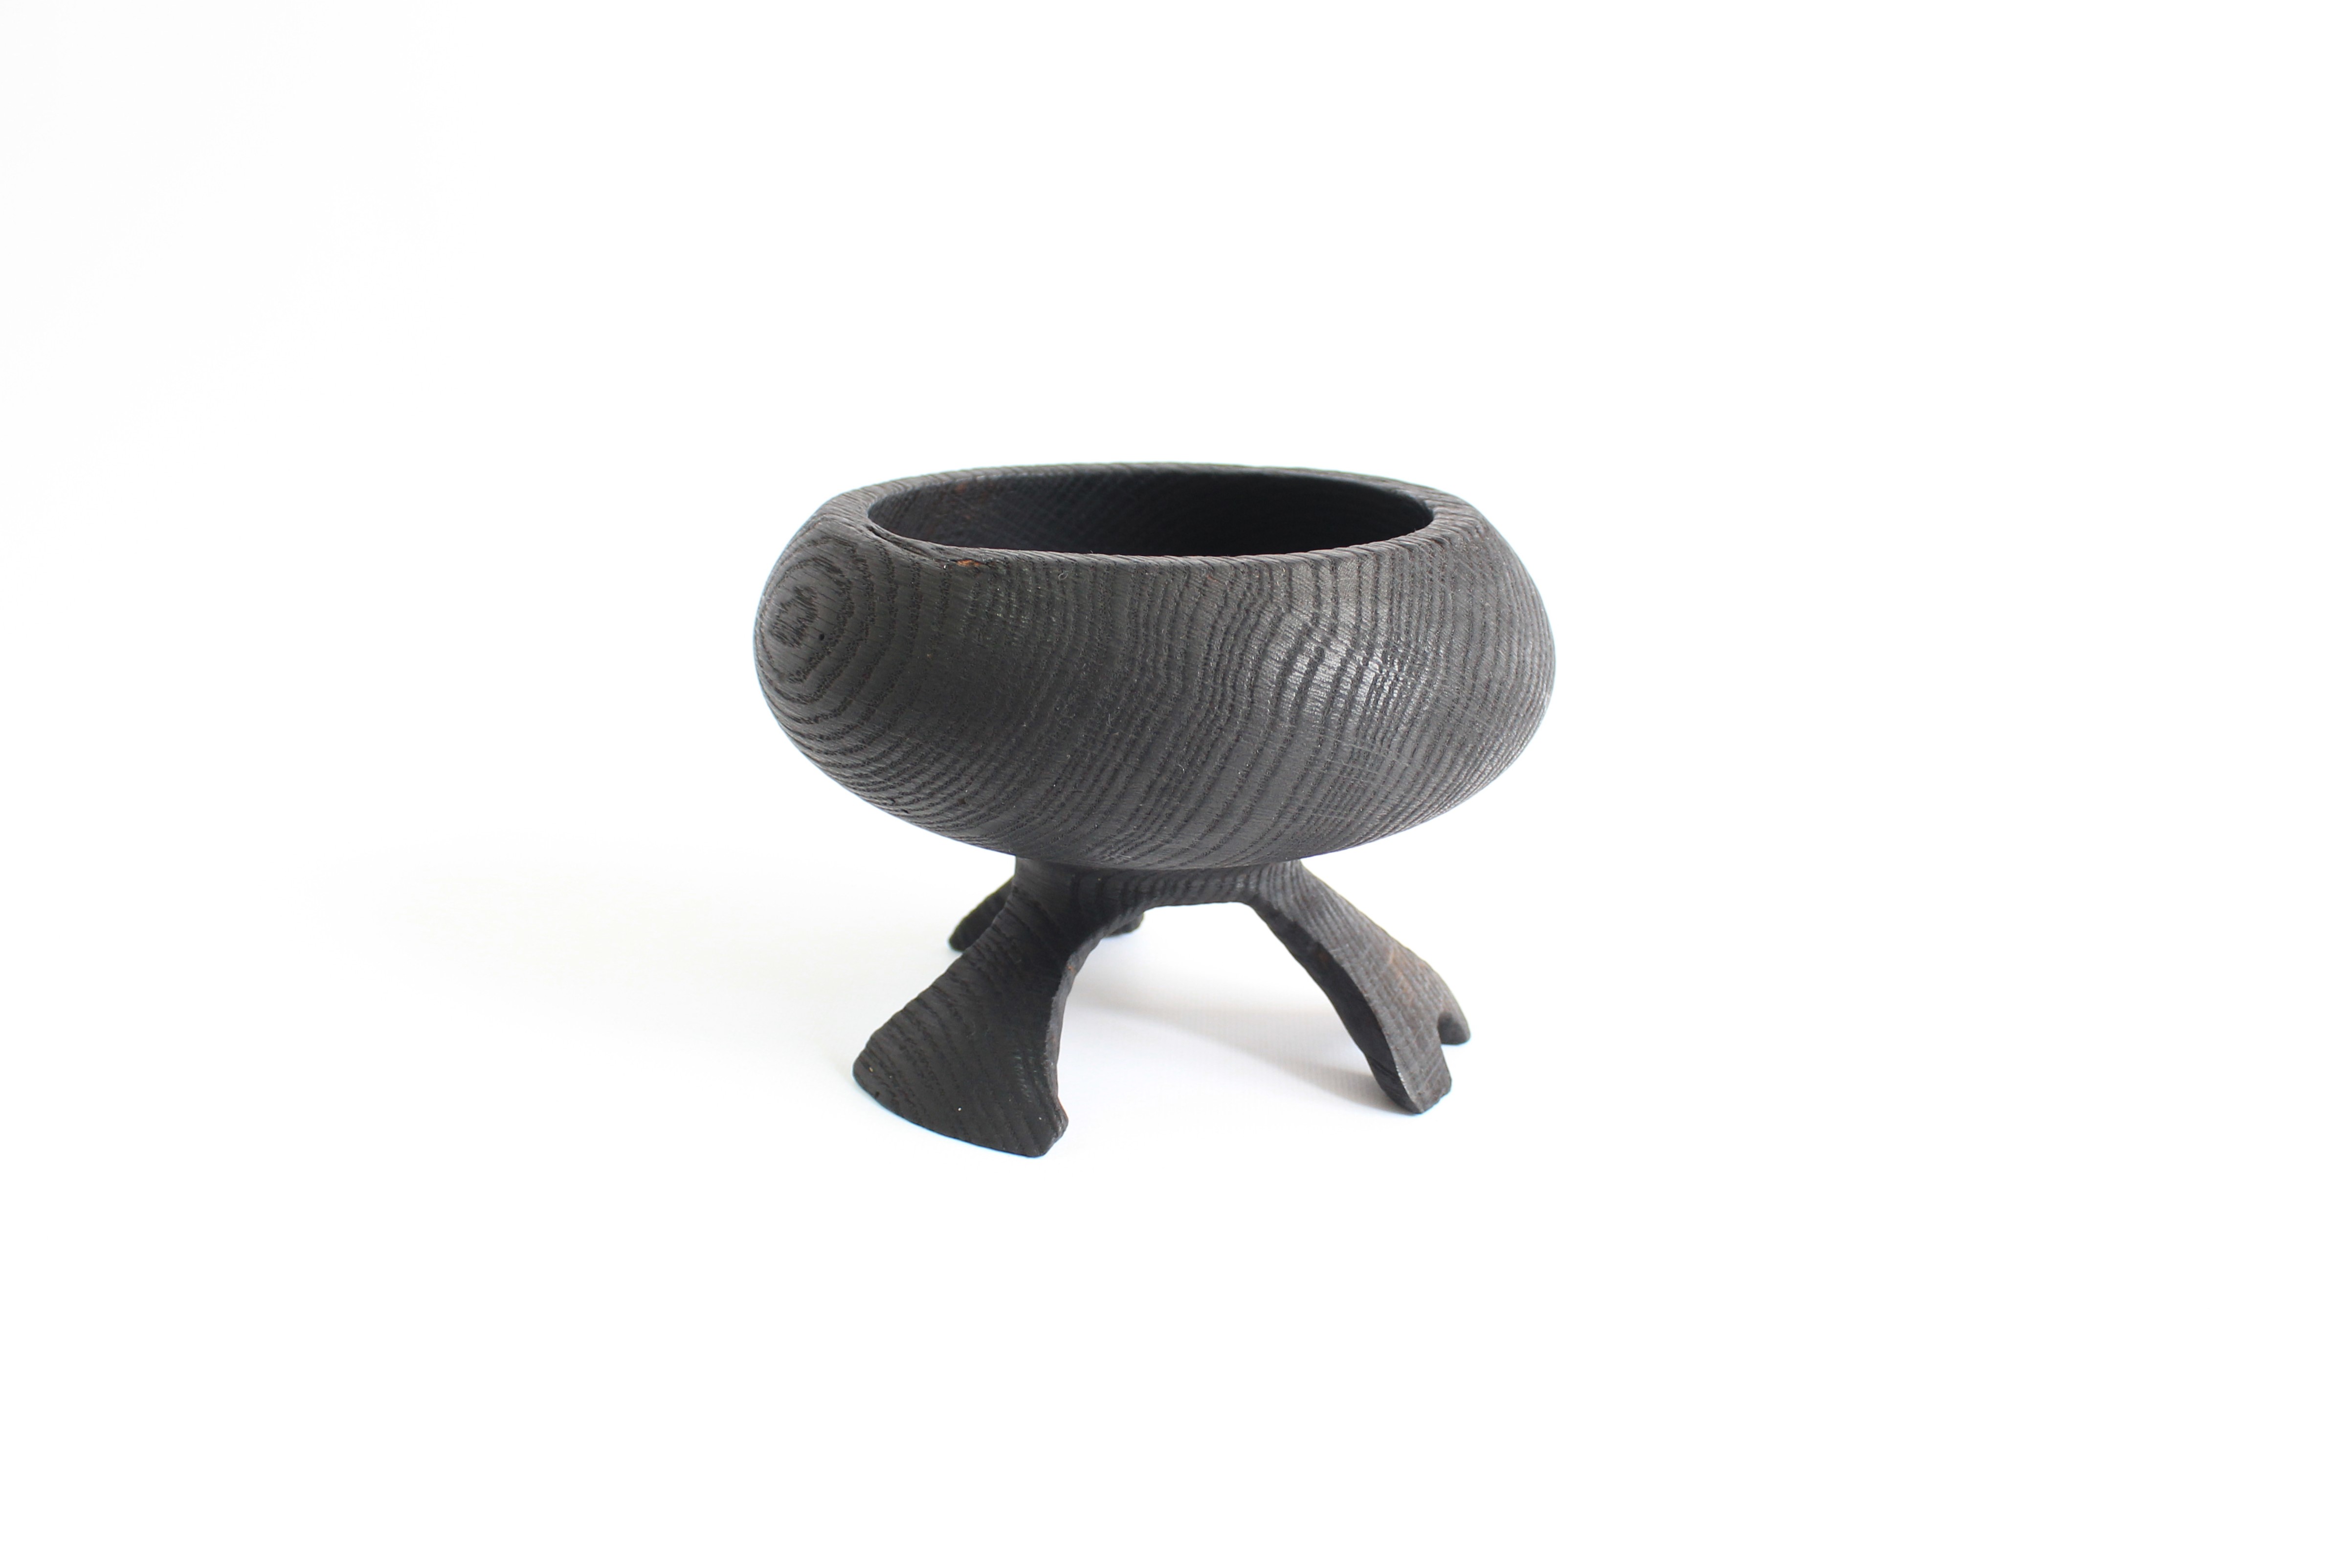 Wooden fruit or candy bowl, black decorative vase 